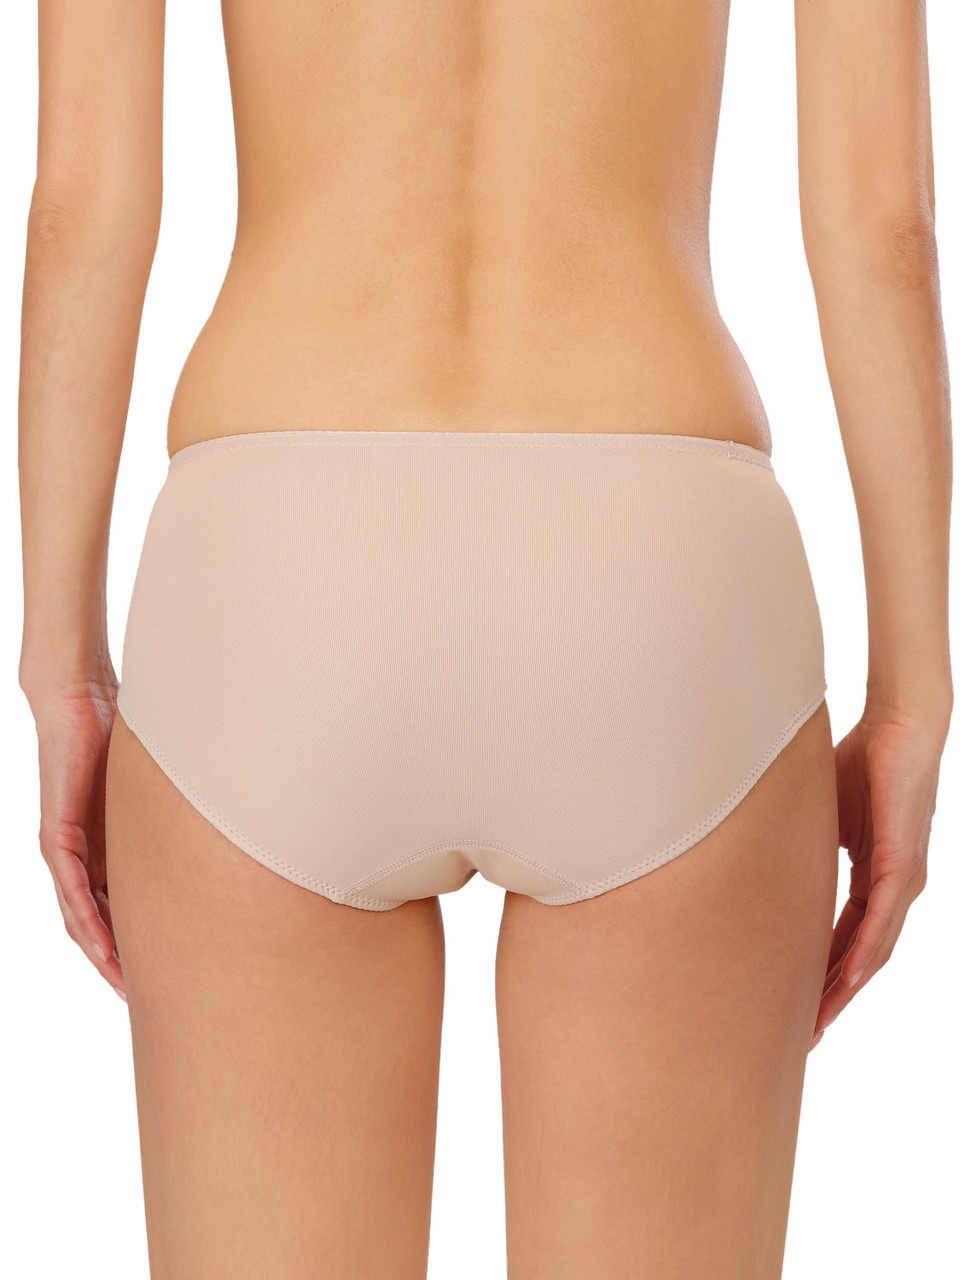 Sisky.lingerie - High waist girdle pant ,snatches the waist